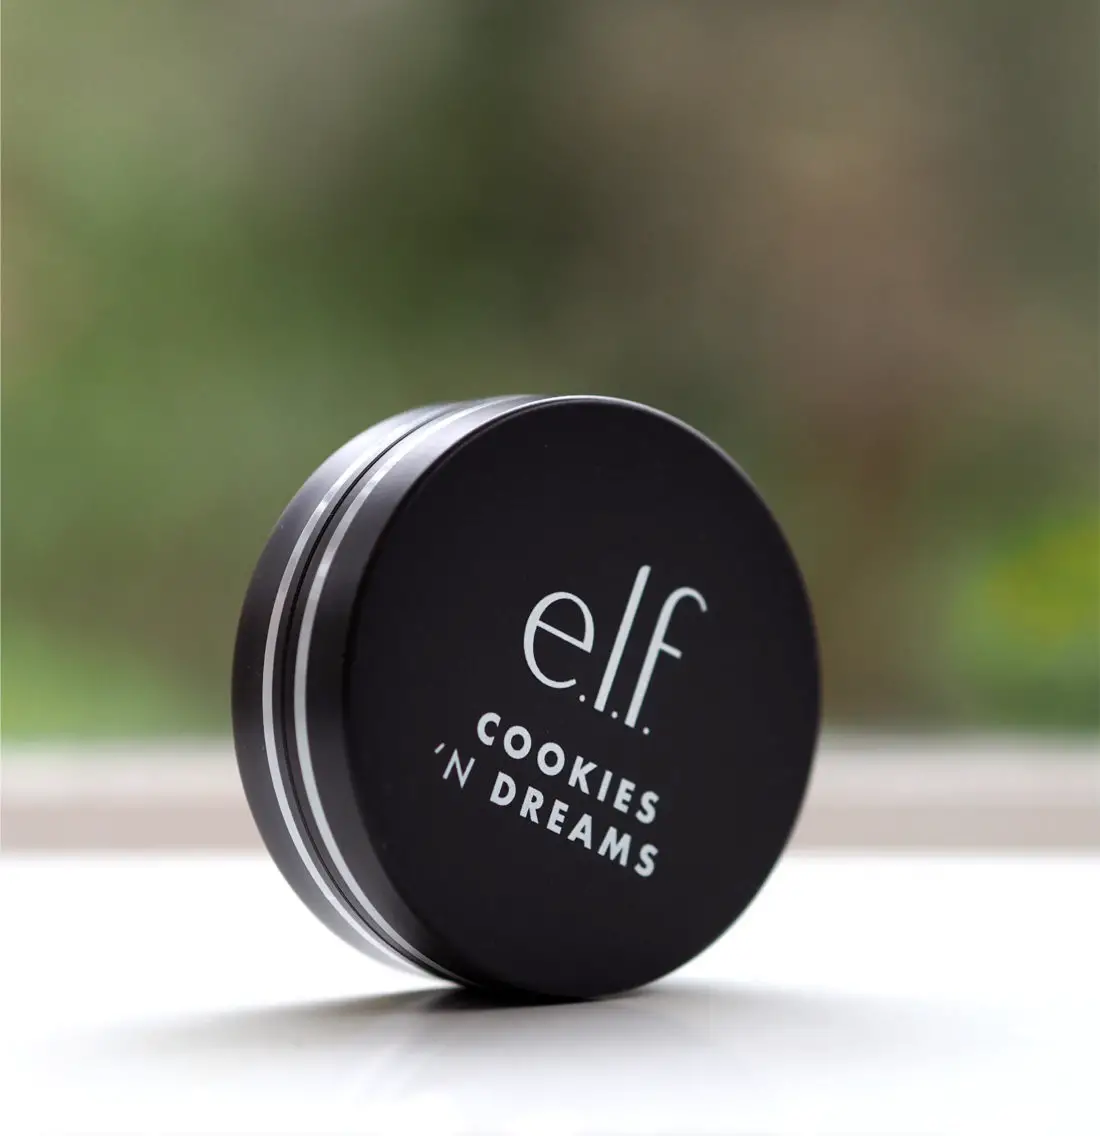 Elf Cookies N Dreams Collection